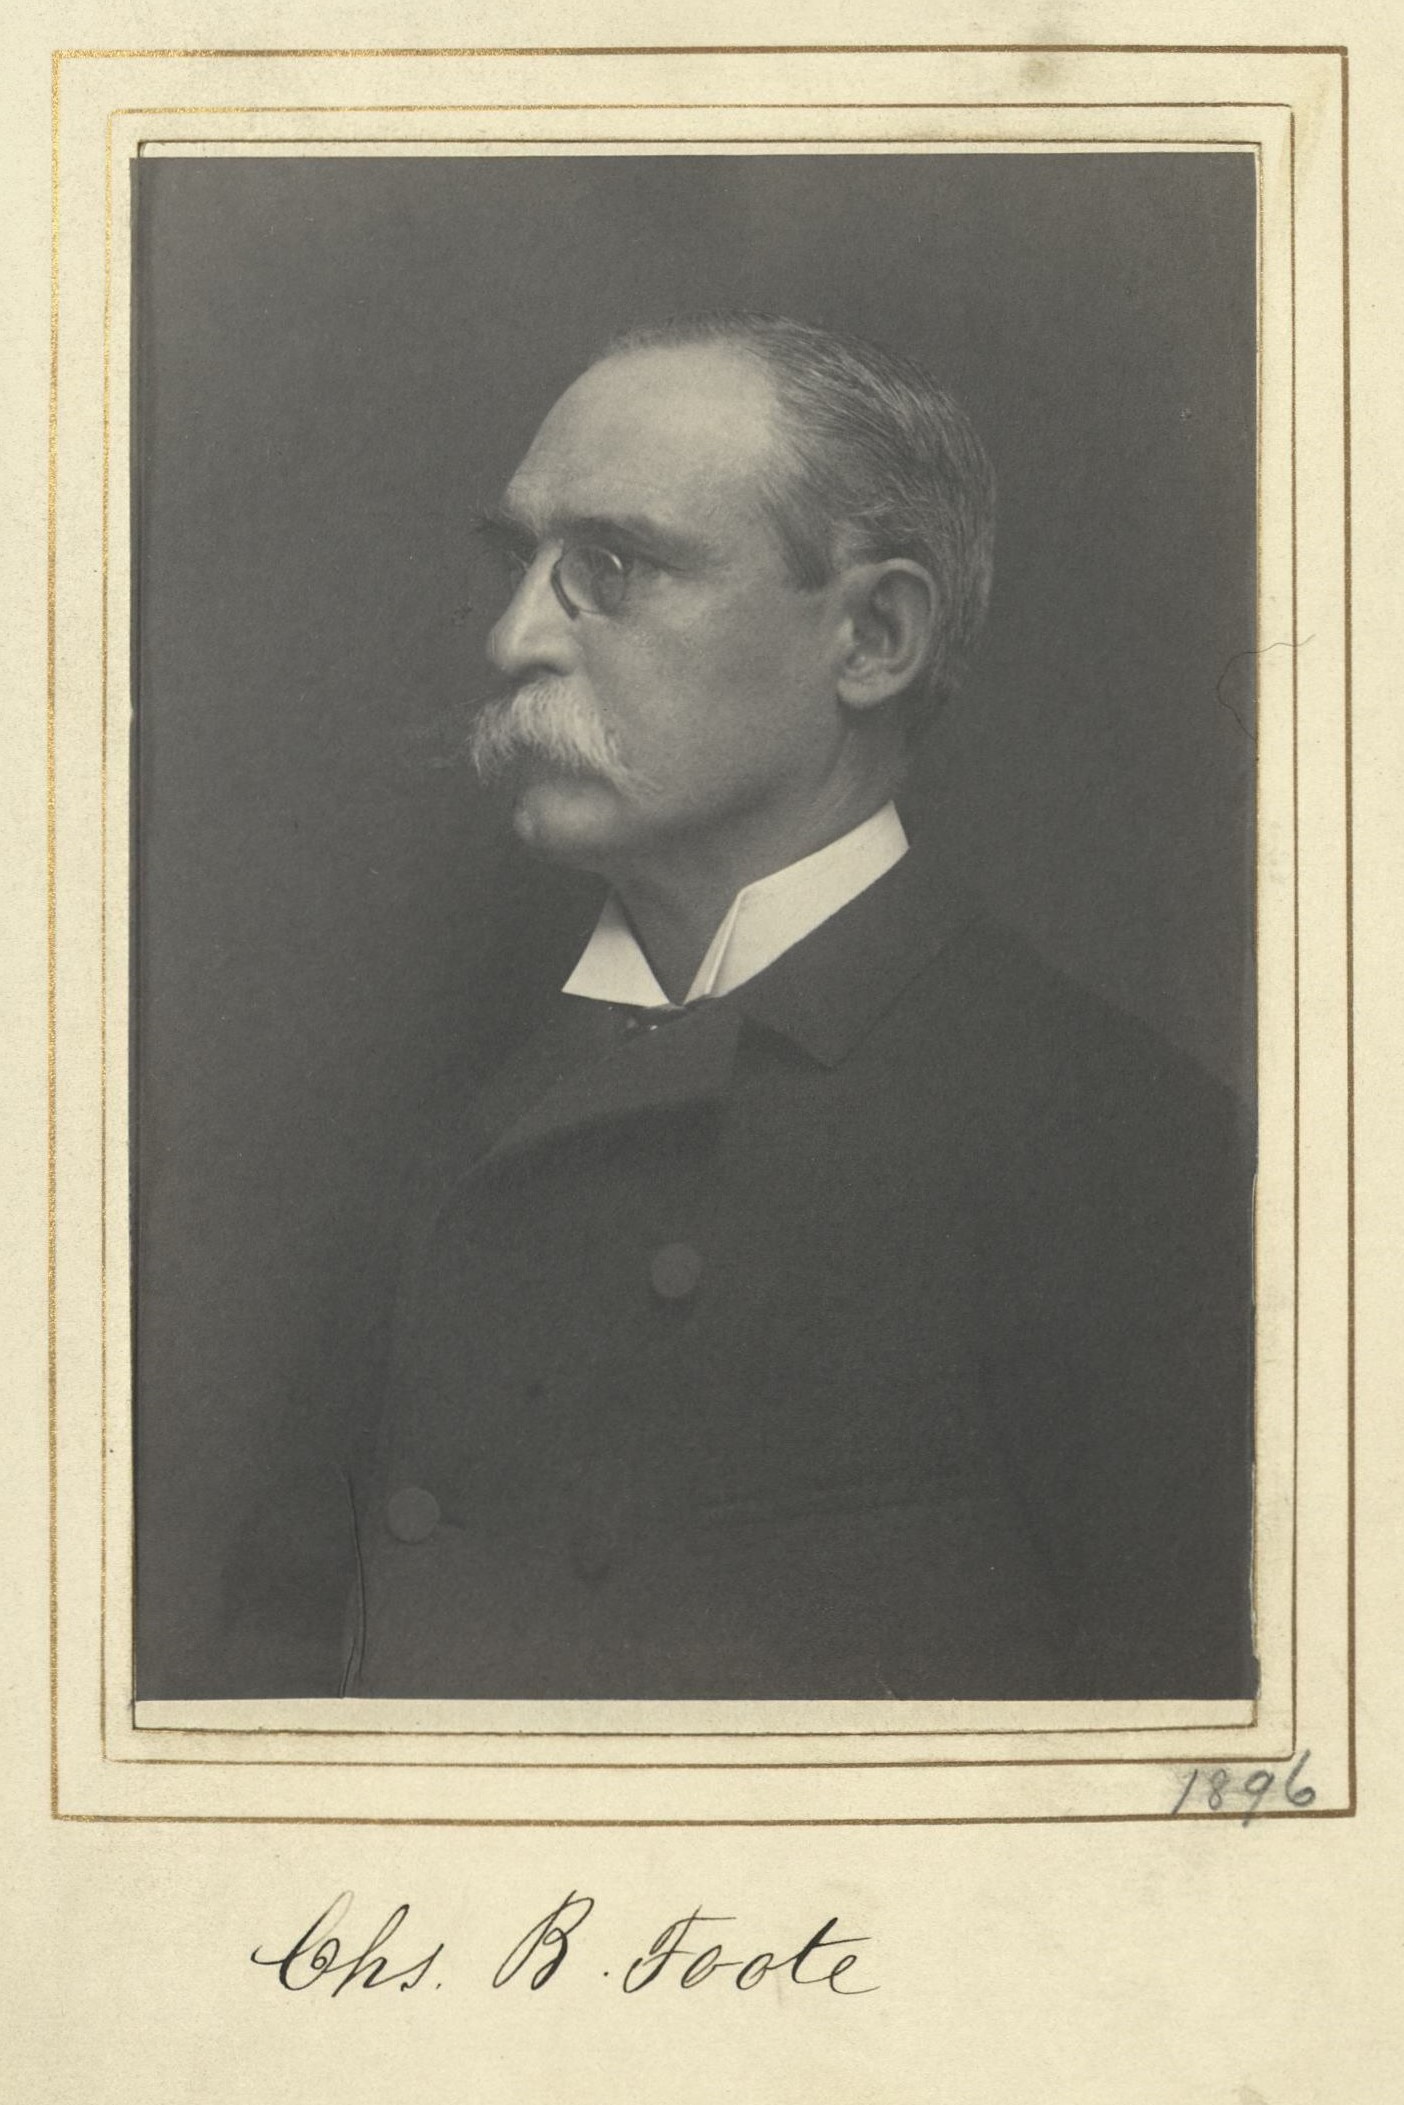 Member portrait of Charles B. Foote